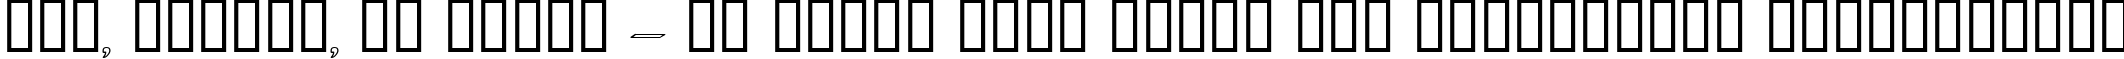 Пример написания шрифтом Dumbledor 3 Outline текста на украинском